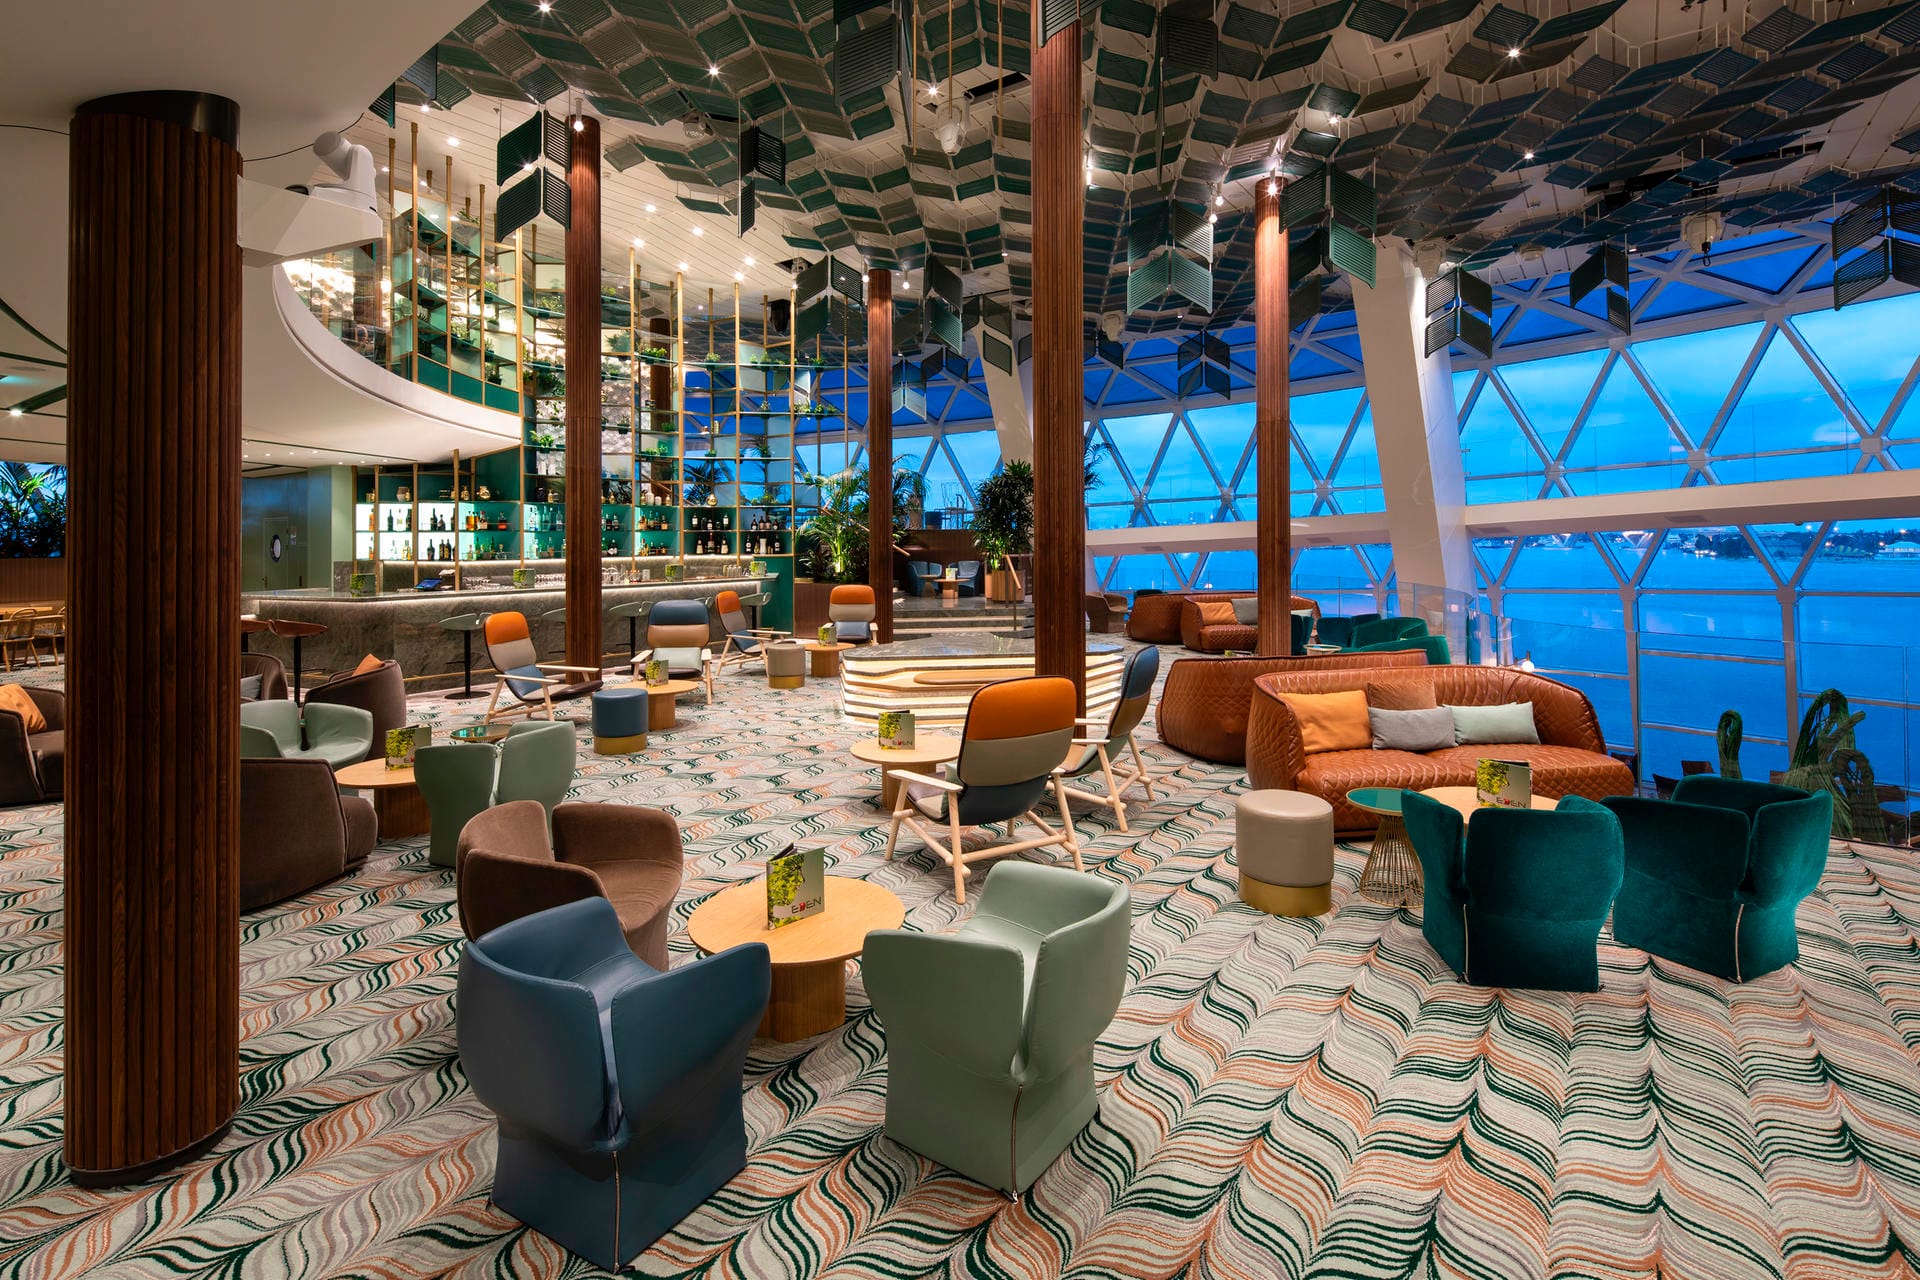 Die Eden-Lounge gab es auf Celebrity-Schiffen bisher nicht. In dem großzügig gestalteten Bereich können Gäste abends gegen Aufpreis essen.